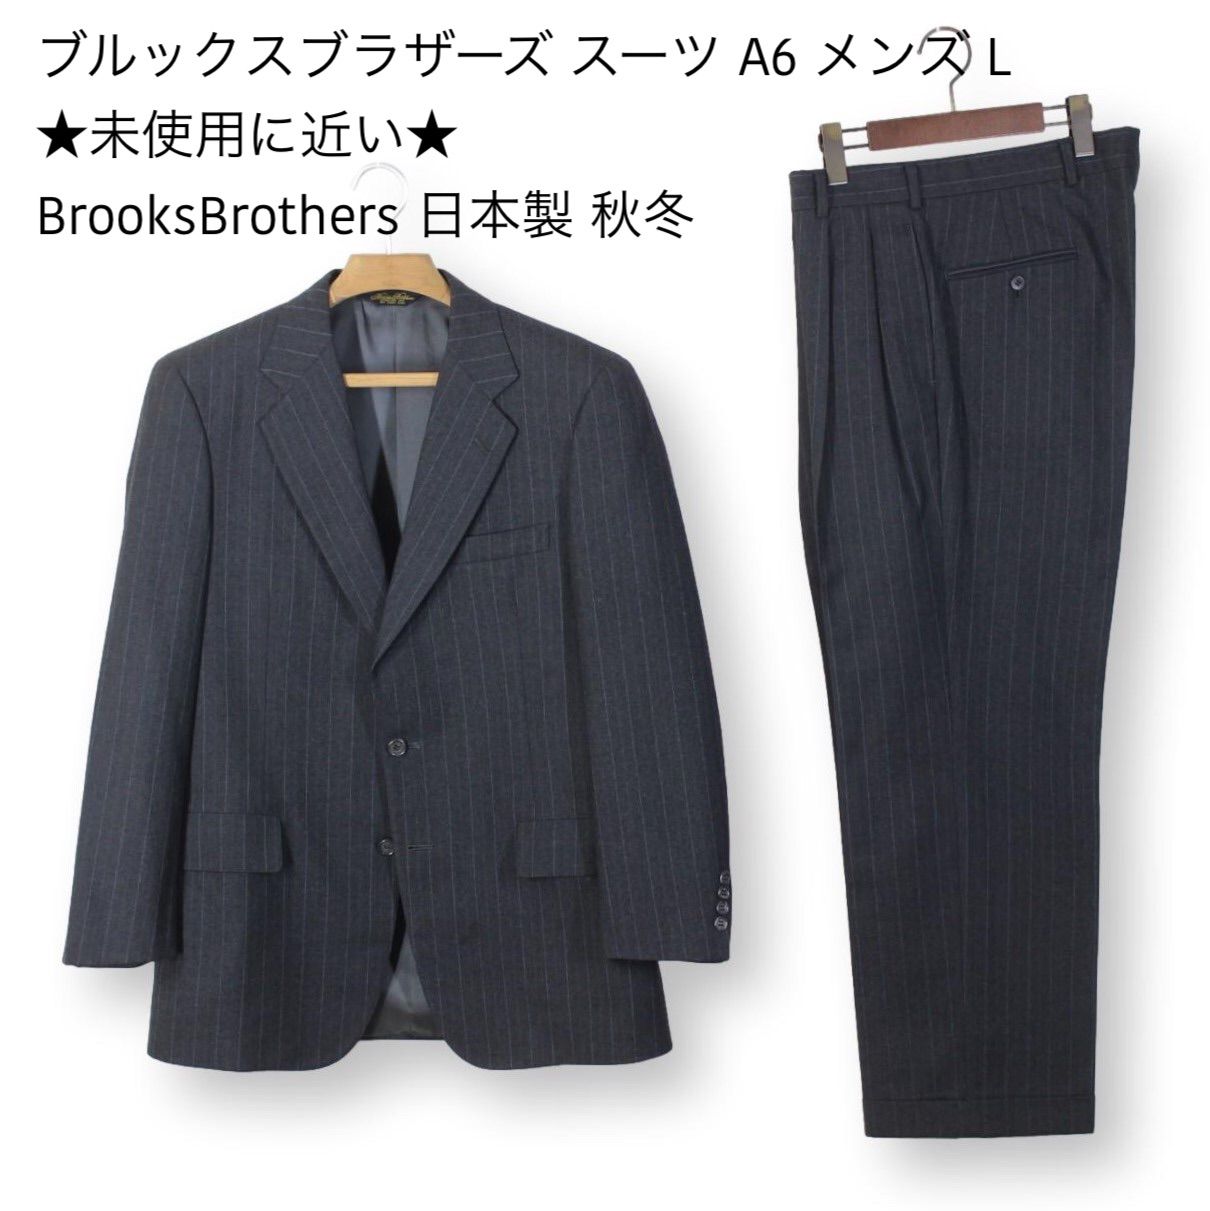 ☆美品☆ BROOKS BROTHERS ブルックスブラザーズ スーツ 紺 A6